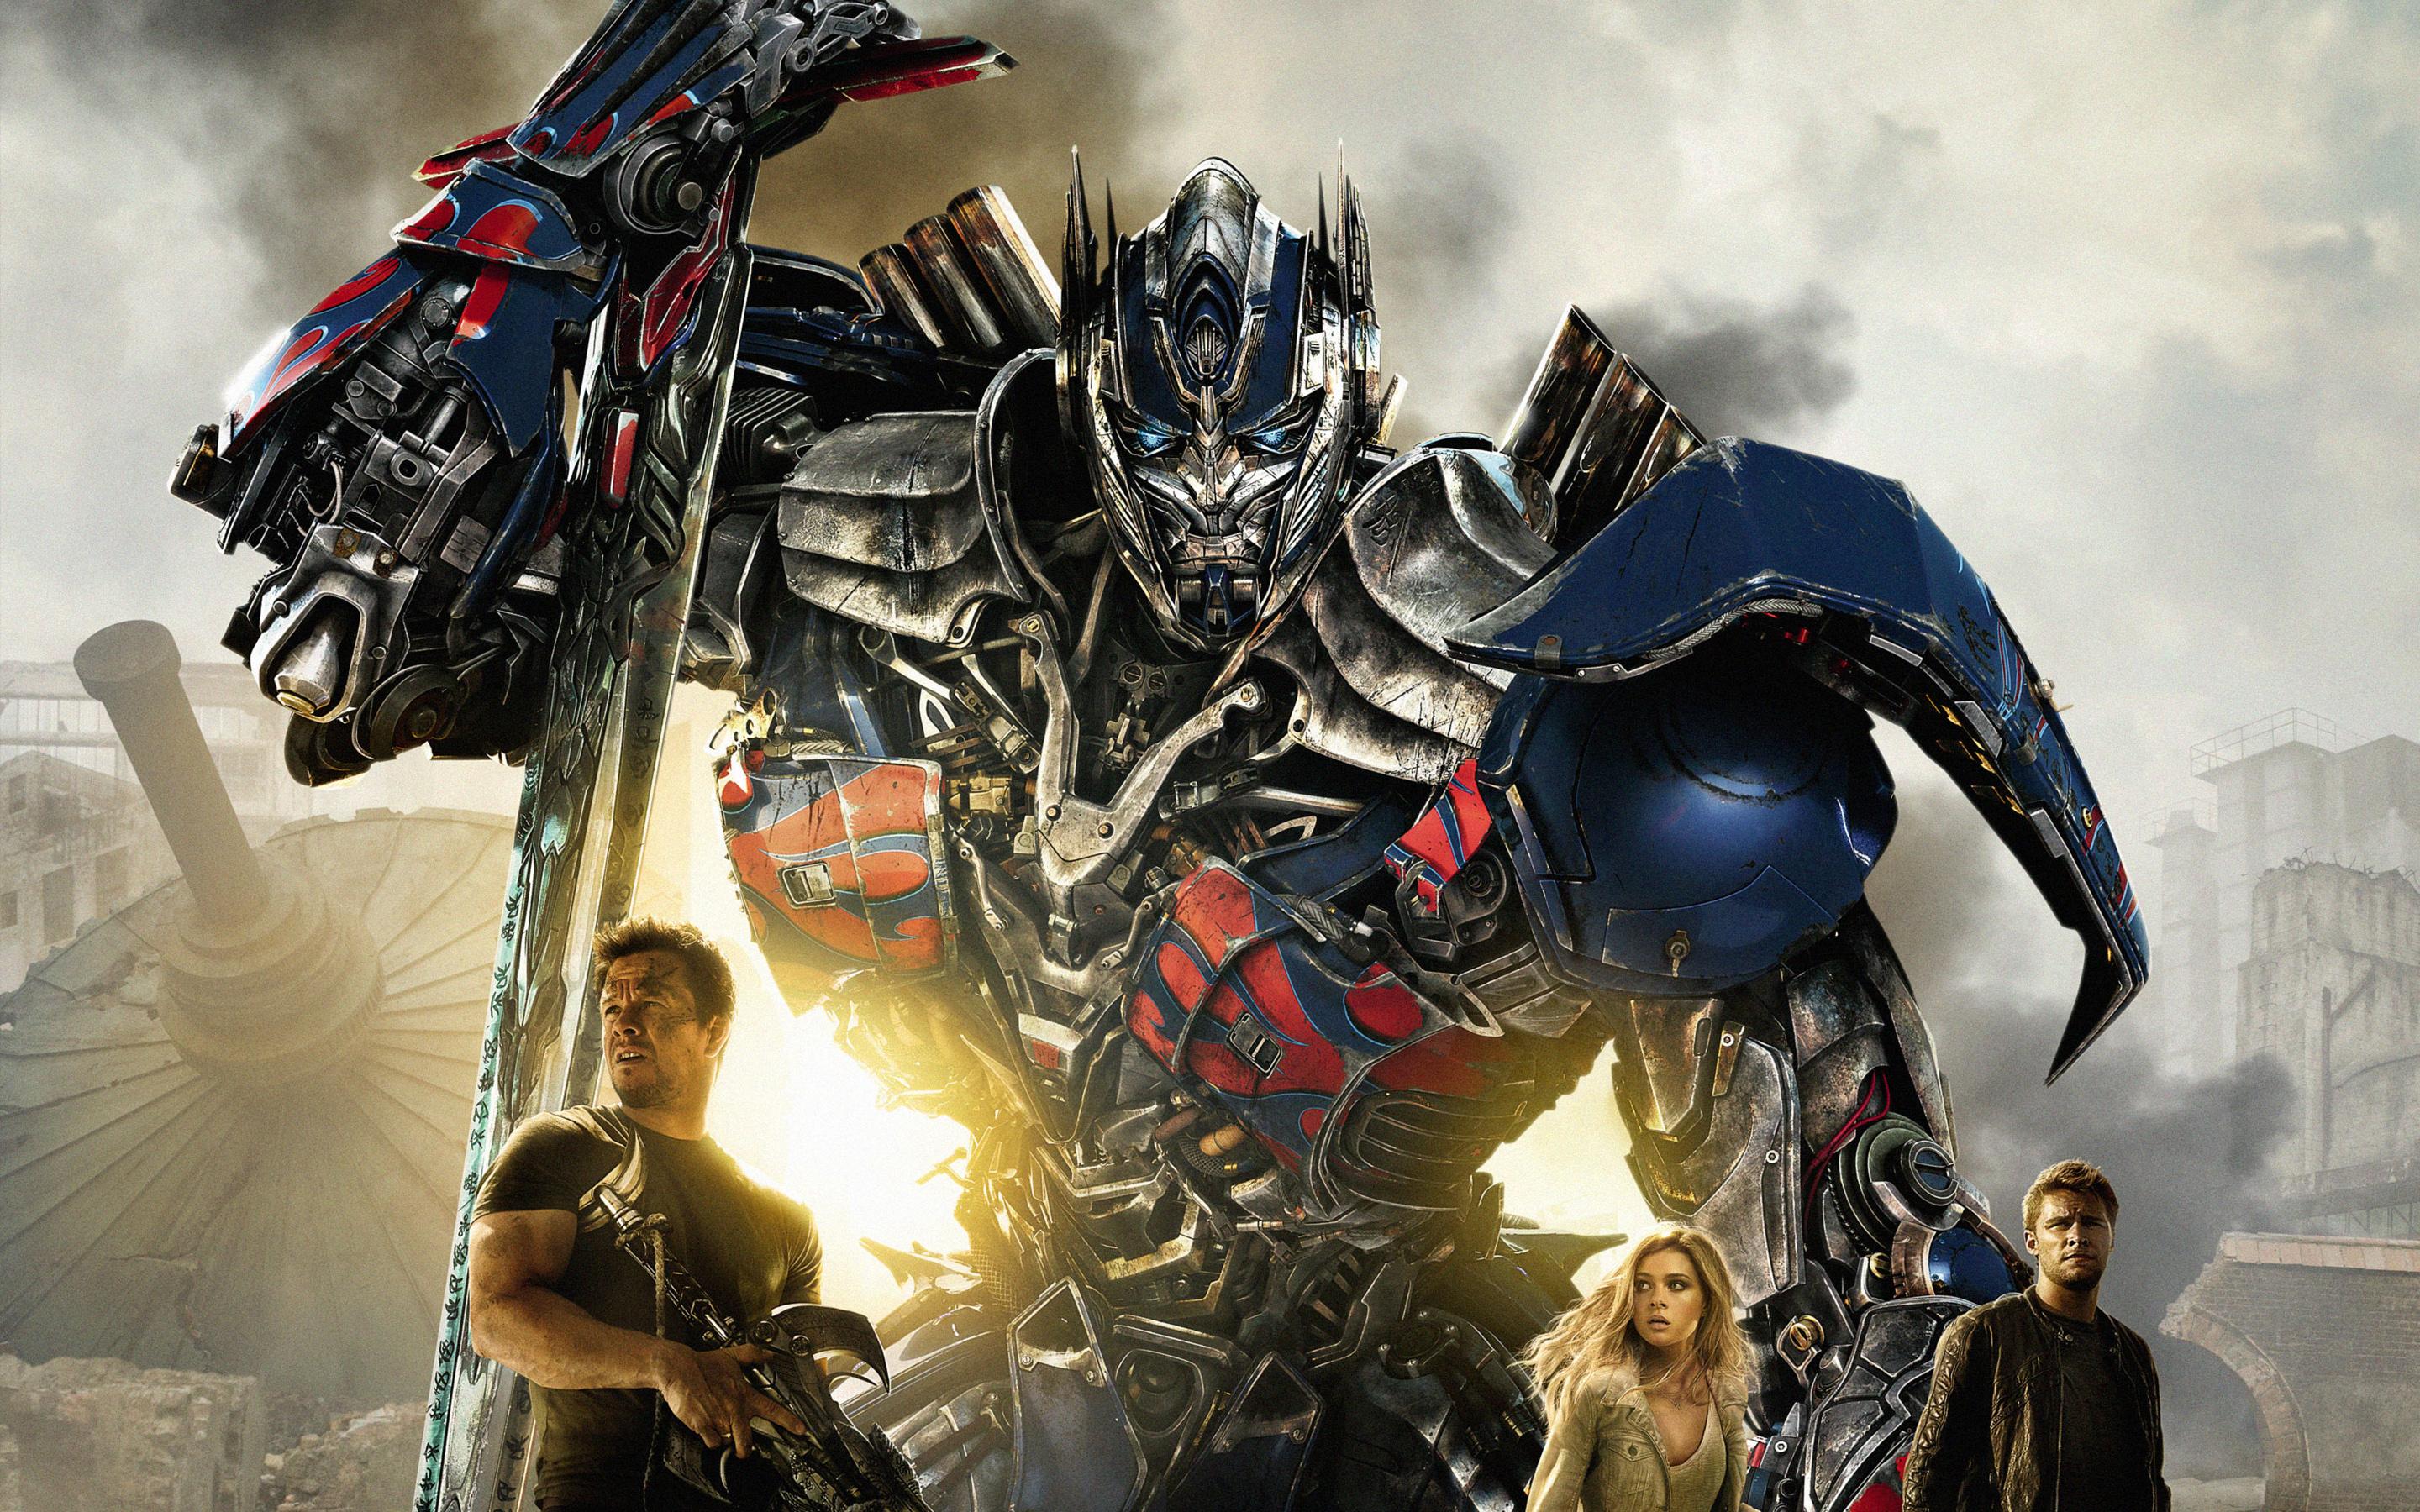 Transformers 4 dará início a uma nova trilogia, diz Michael Bay